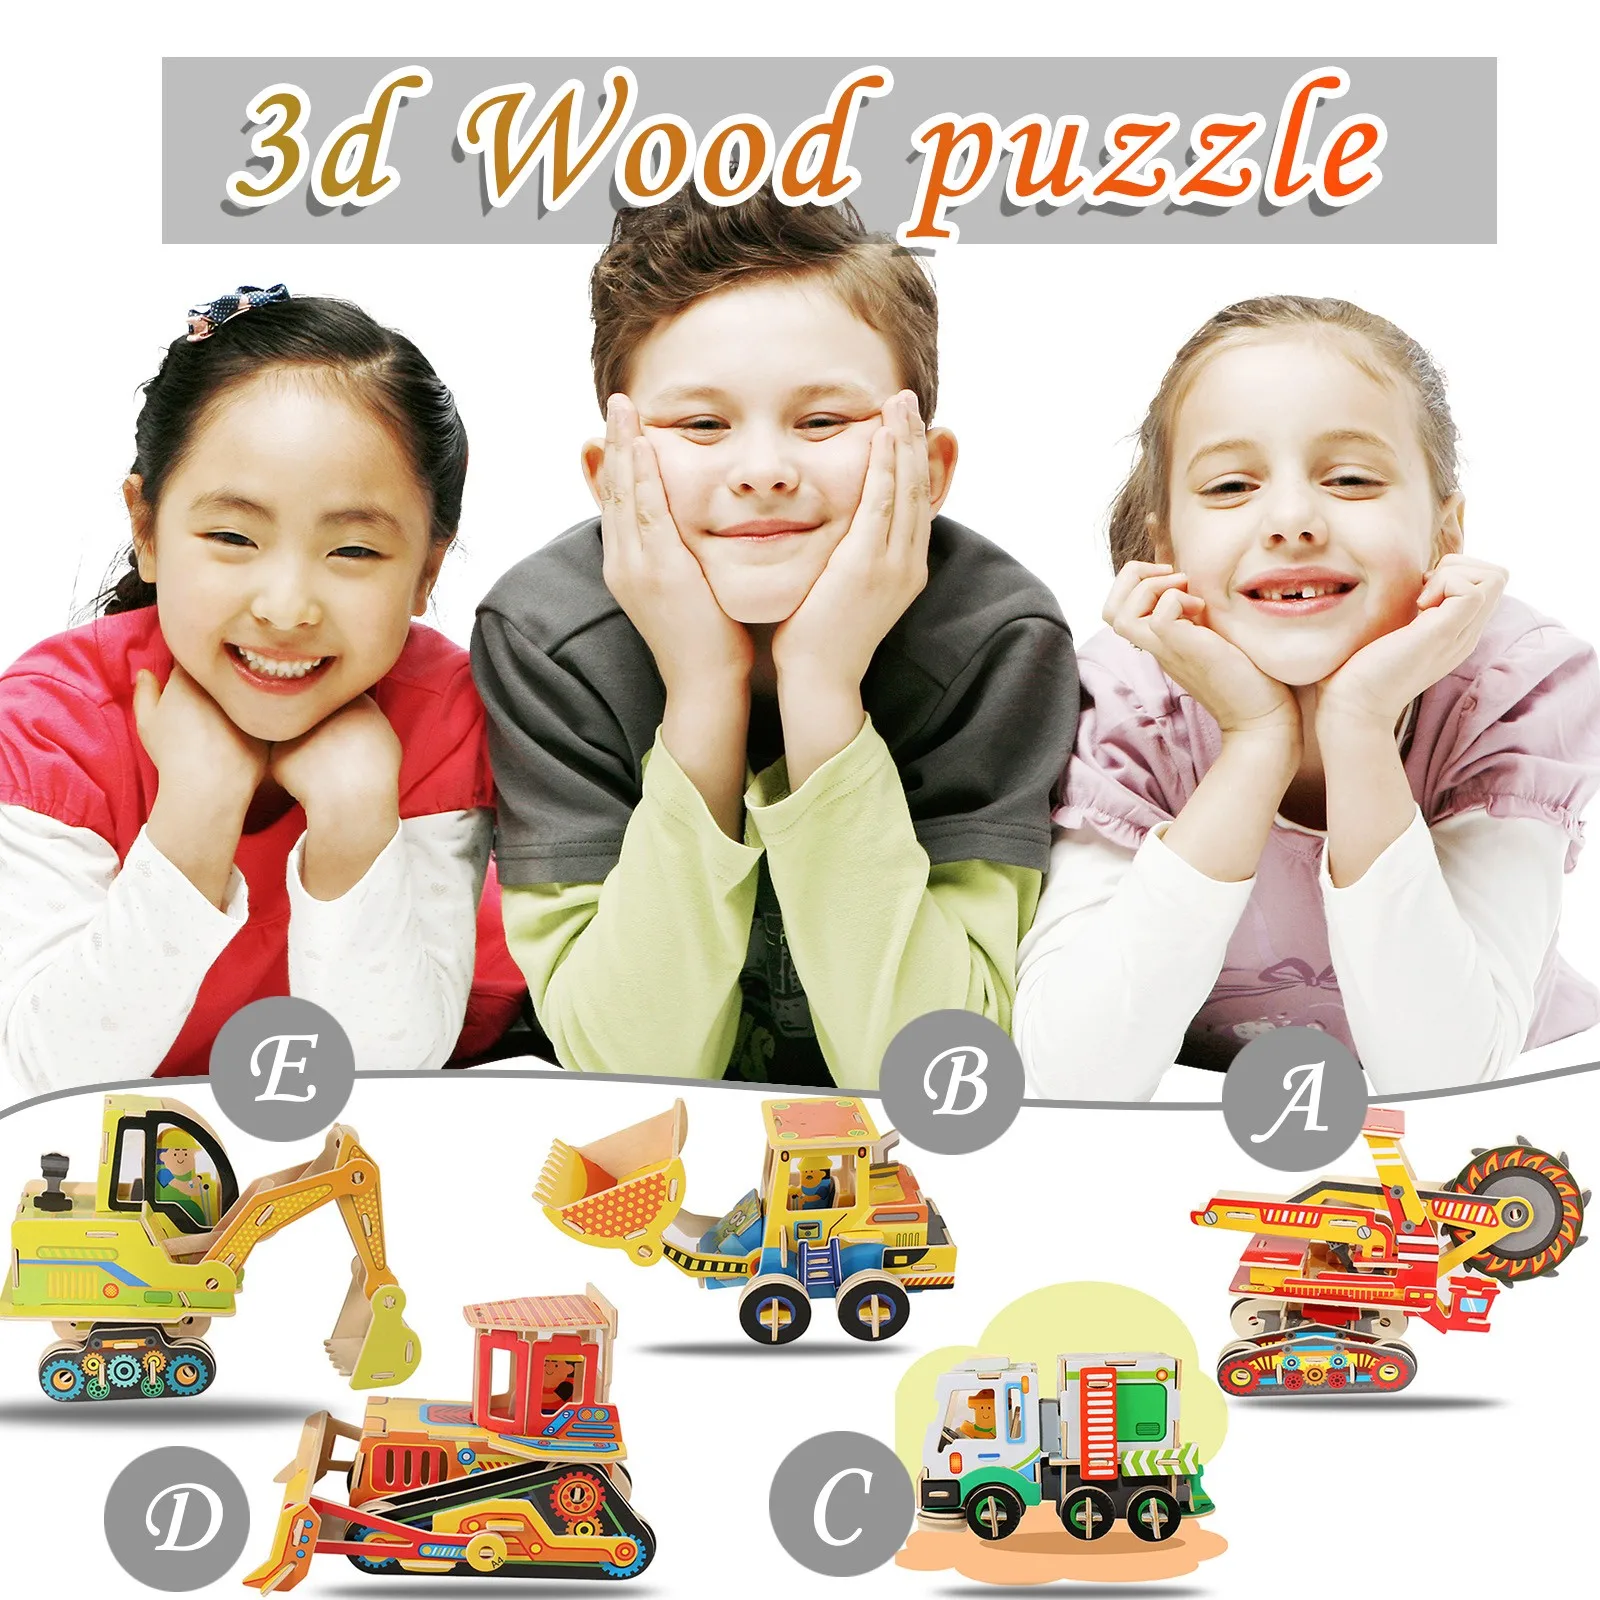 

Montessori Детские DIY 3D ручной работы из дерева с автомобилем из мультфильма головоломки интерактивные Обучающие Игрушки для раннего развития д...